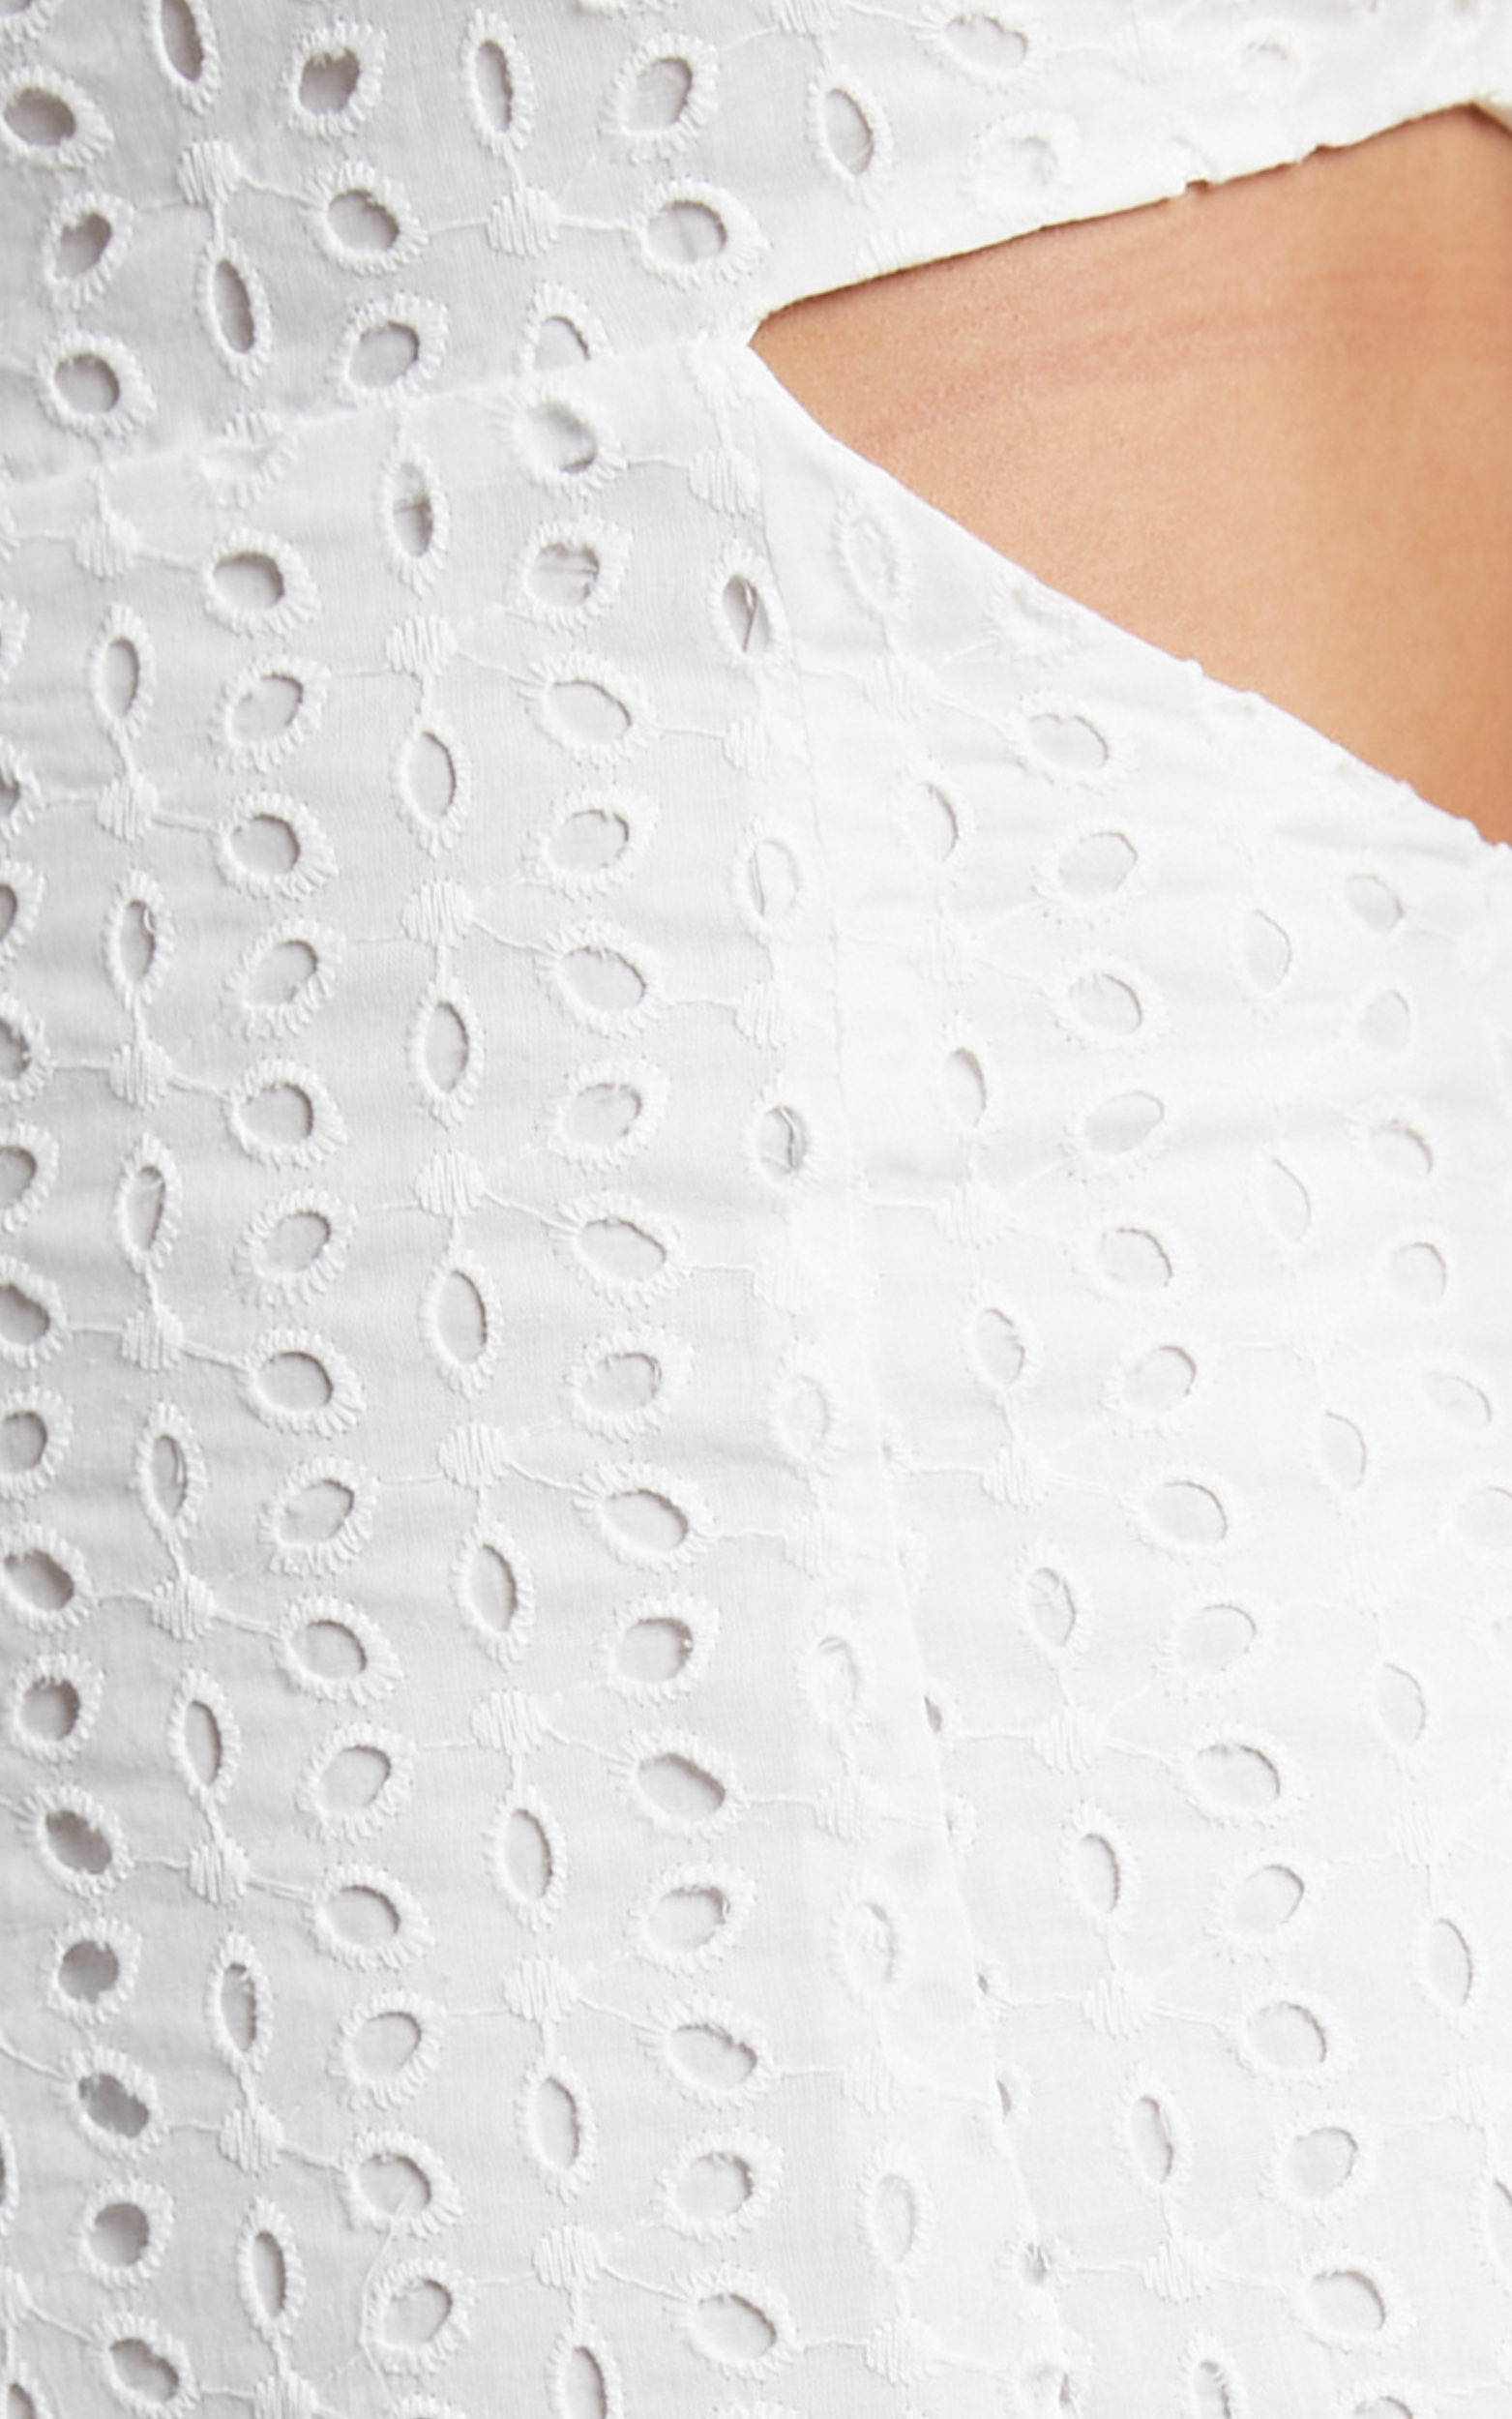 Levieth Mini Embroidery Dress in White | Showpo EU